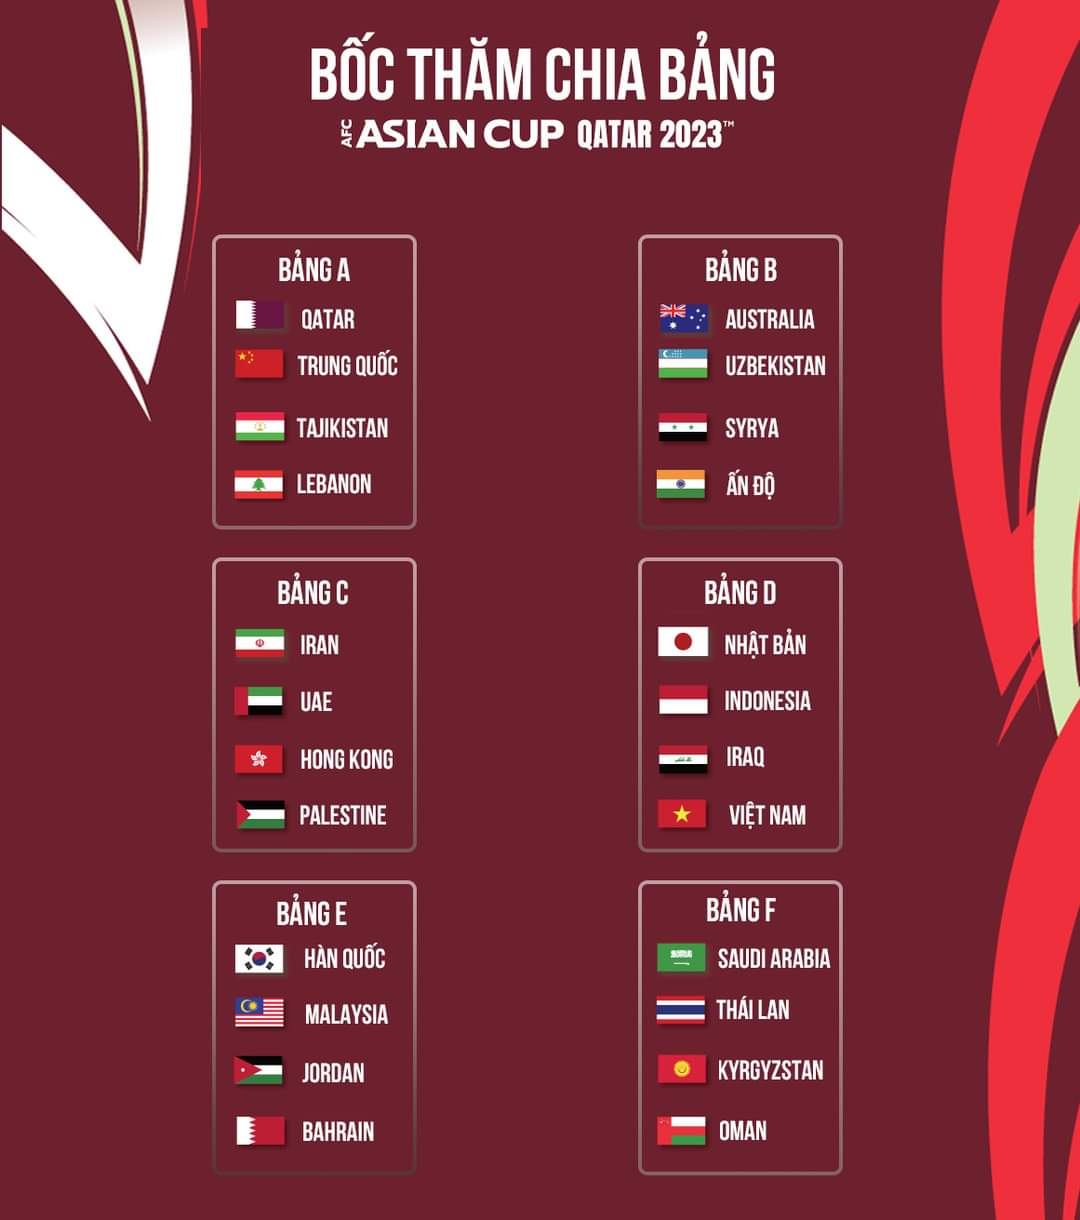 Đội tuyển Việt Nam chạm trán 2 đối thủ mạnh Nhật Bản, Iraq và “hàng xóm” Indonesia tại vòng chung kết AFC Asian Cup 2023